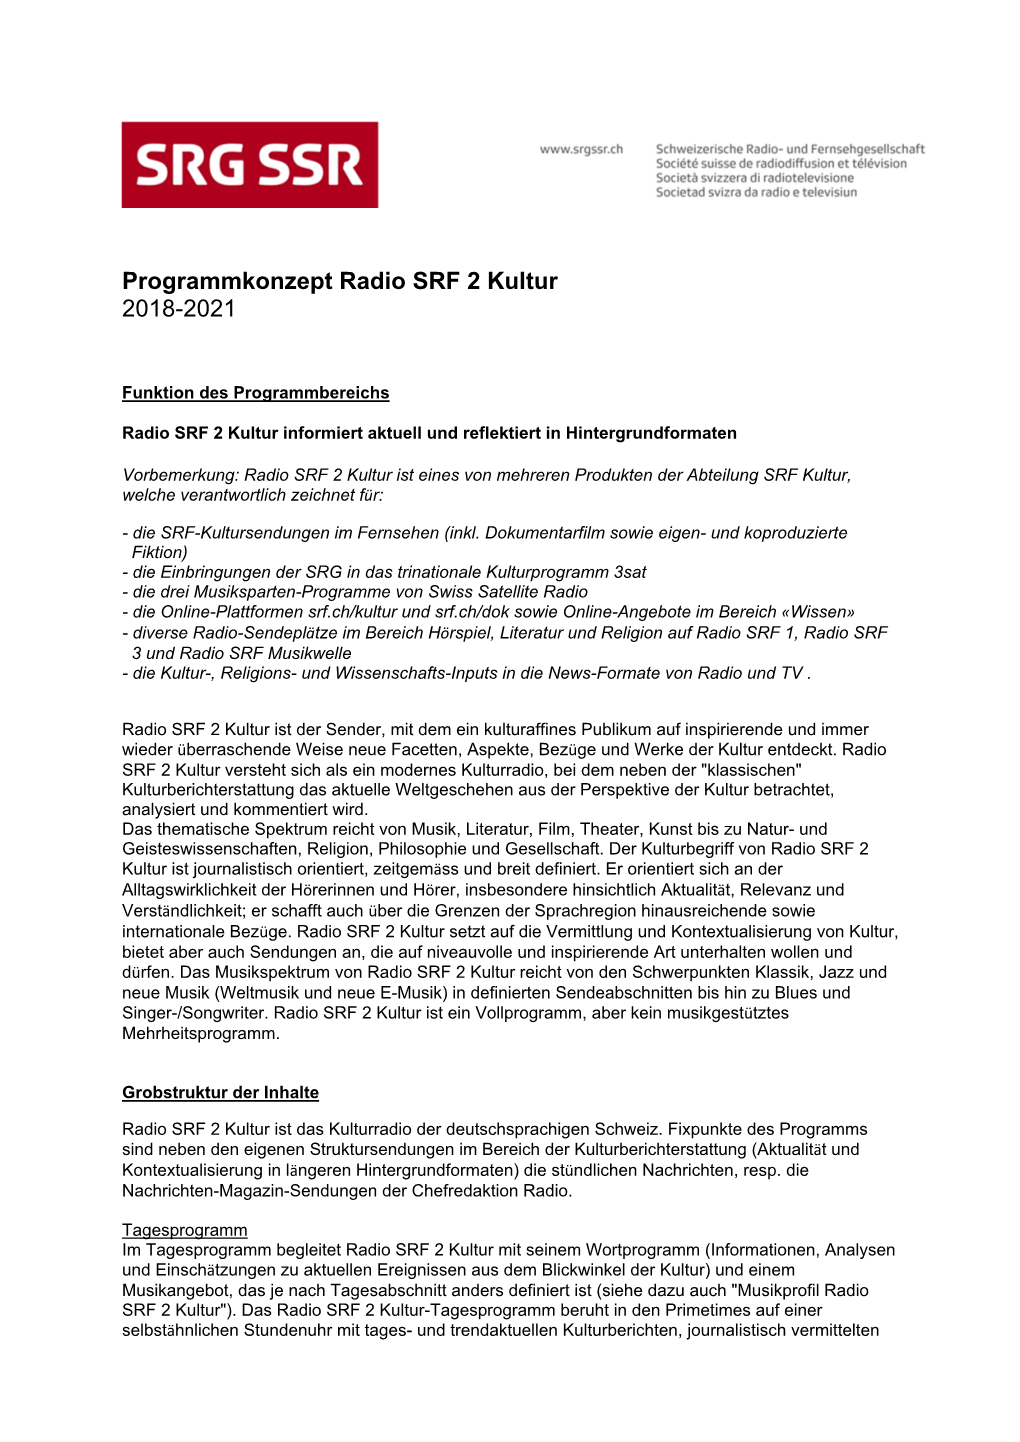 Programmkonzept Radio SRF 2 Kultur 2018-2021